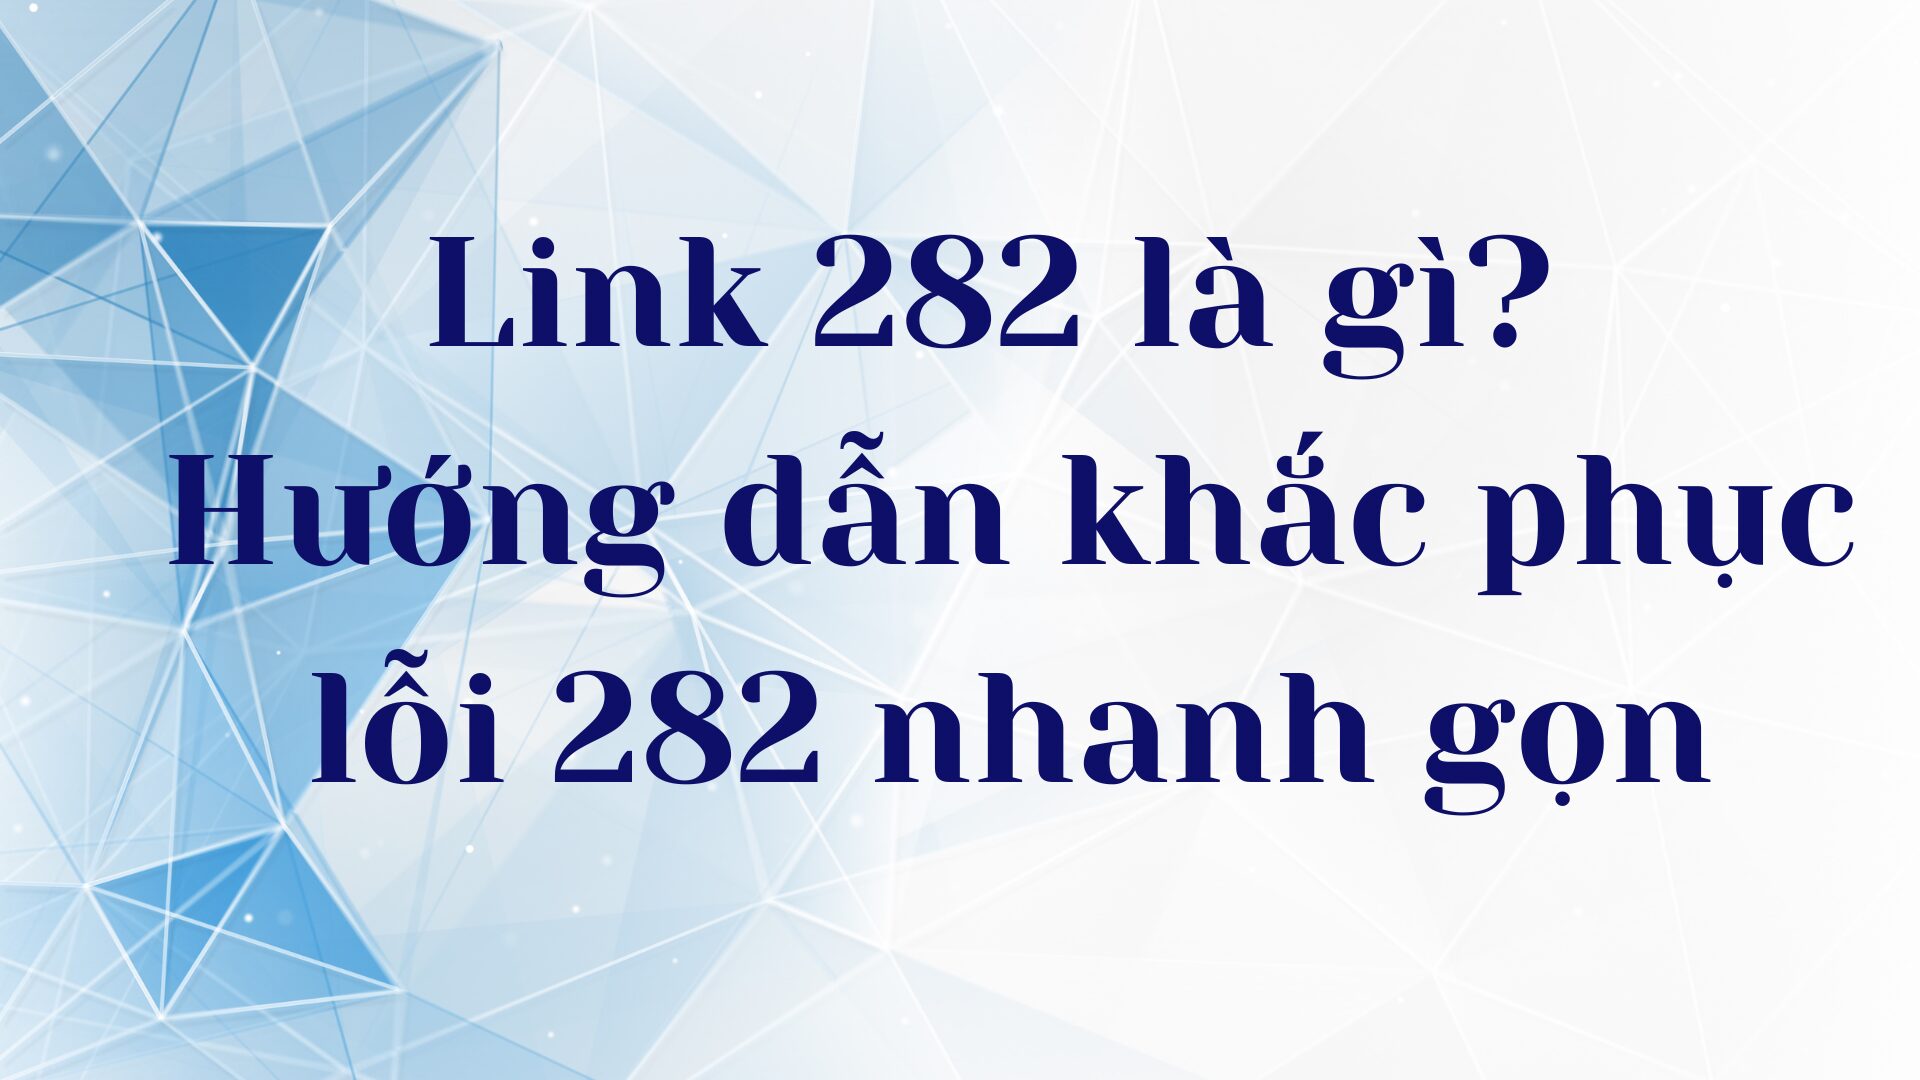 Link 282 là gì? Hướng dẫn khắc phục lỗi 282 nhanh gọn